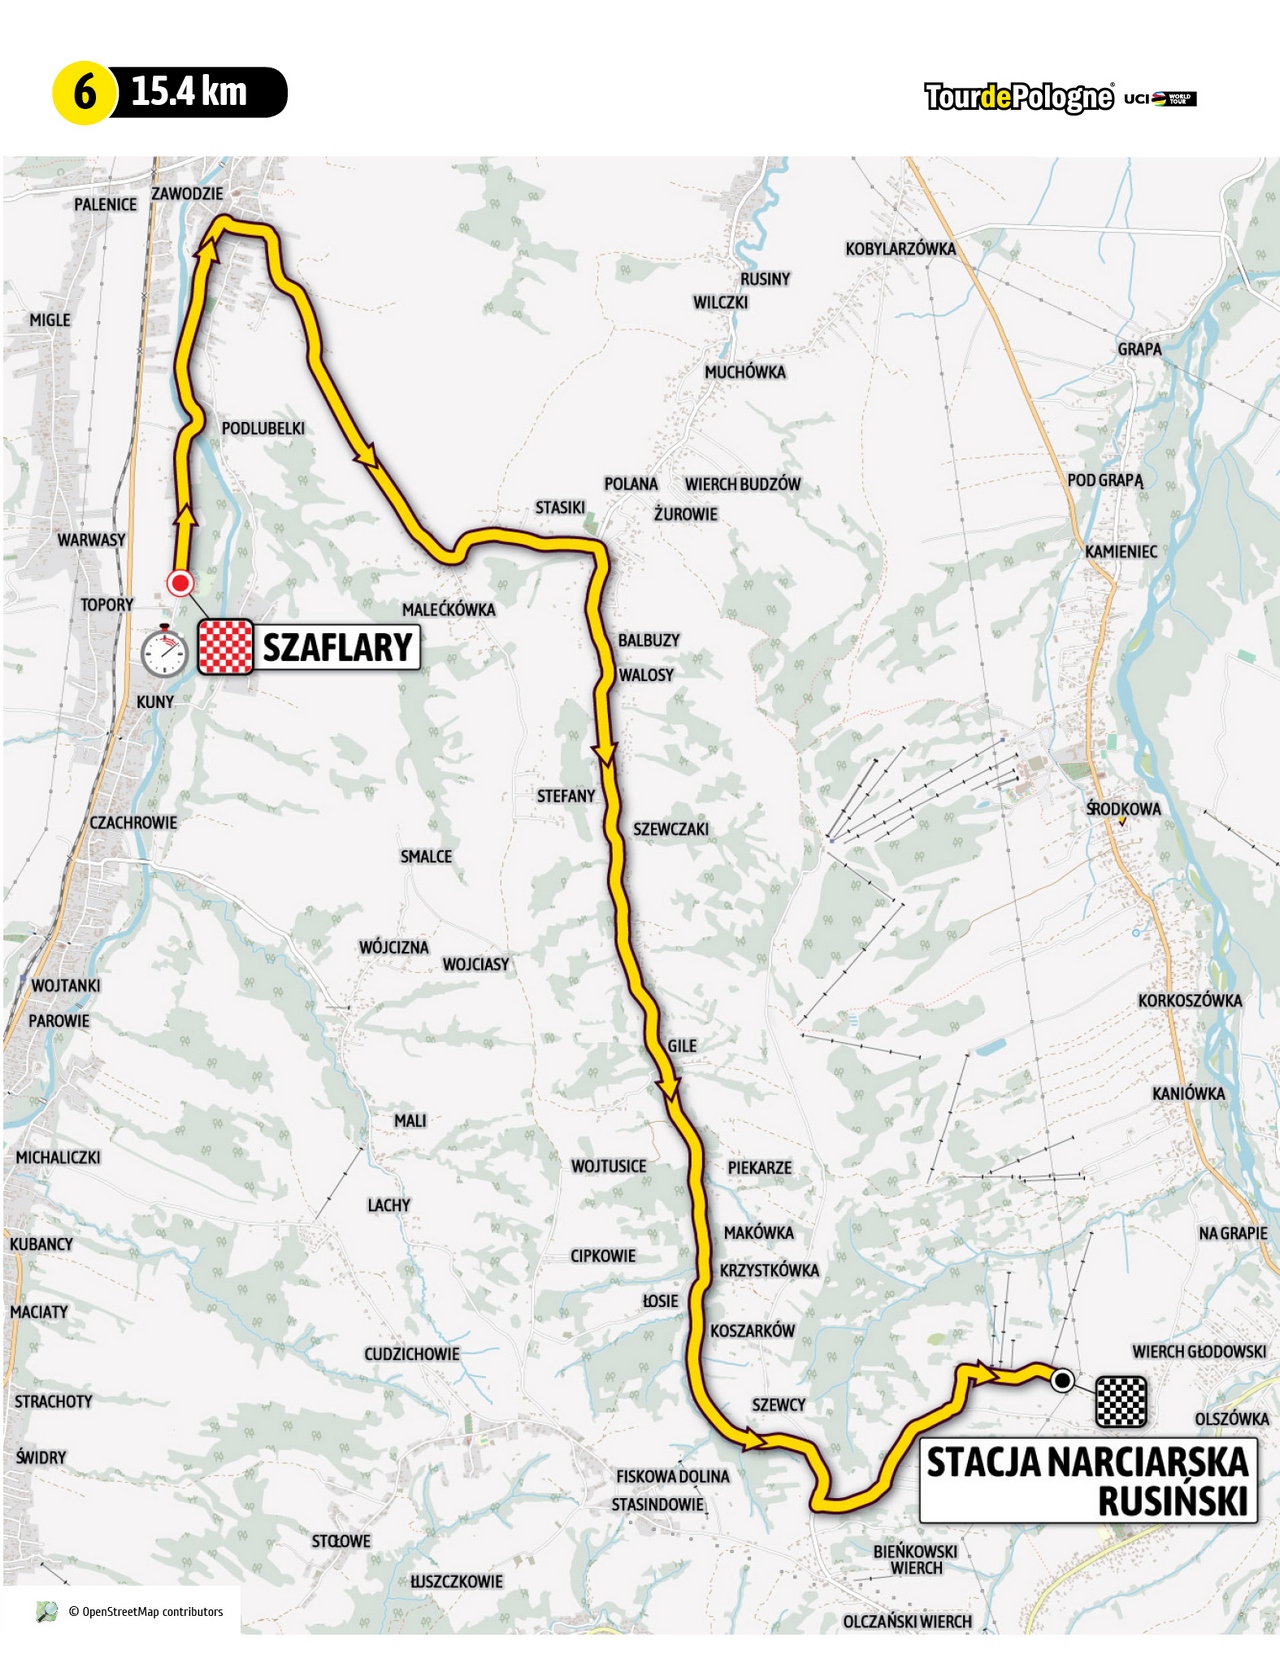 Etap 6 Tour de Pologne (źródło: tourdepologne.pl)